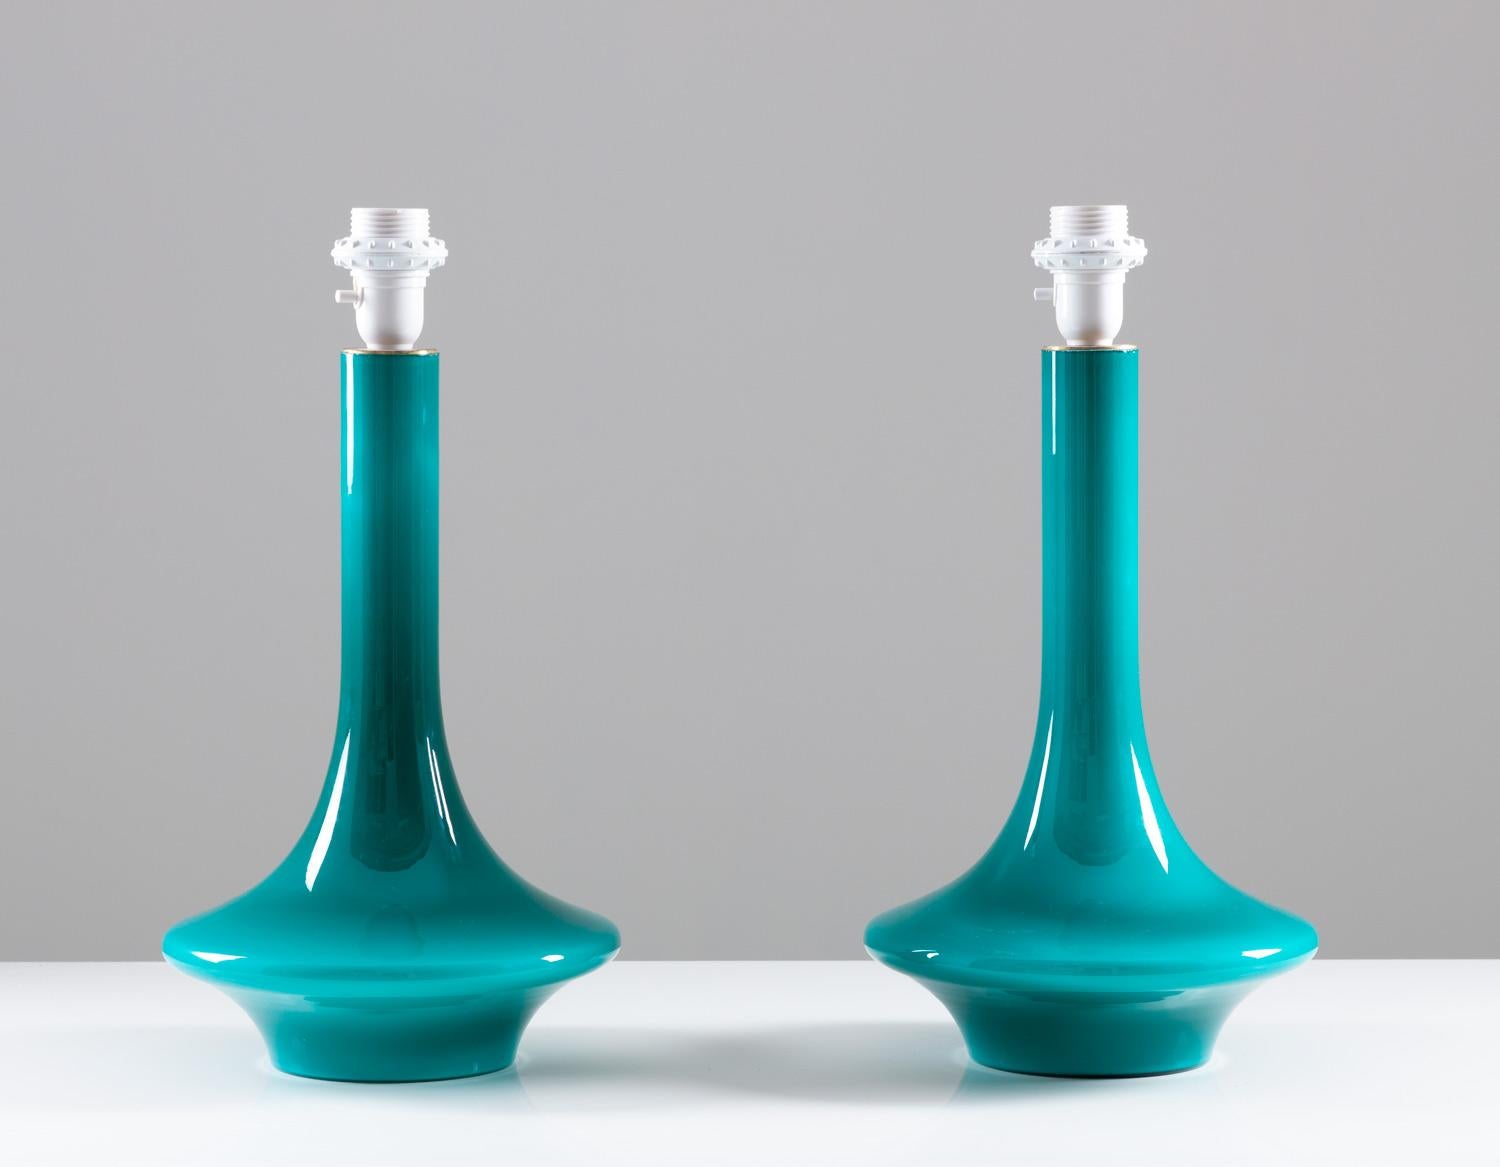 Satz von zwei Tischlampen, wahrscheinlich von Luxus, Schweden, 1960er Jahre.
Die Lampen sind aus Glas mit Messingdetails. Das Design ist einfach und elegant mit der schmalen Taille und der tiefen türkisen Farbe.
Zustand: Ausgezeichneter